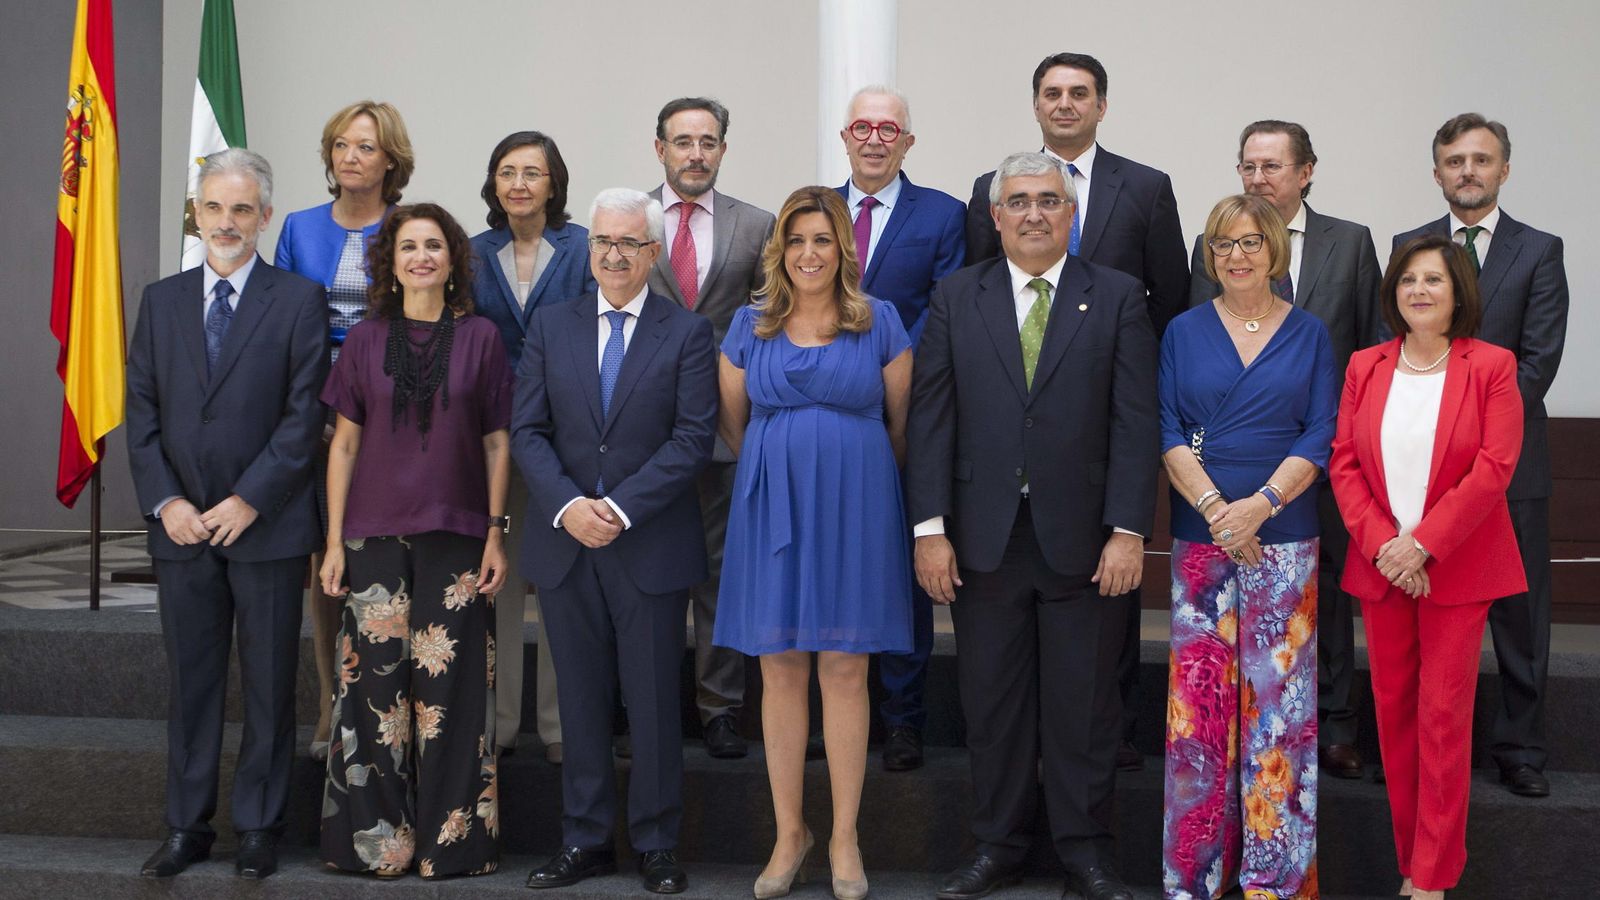 Foto: Toma posesión del nuevo gobierno de la Junta de Andalucía. La presidenta de la Junta de Andalucía, Susana Díaz (c), en la foto de familia con los trece miembros del nuevo Gobierno andaluz en Sevilla. EFE